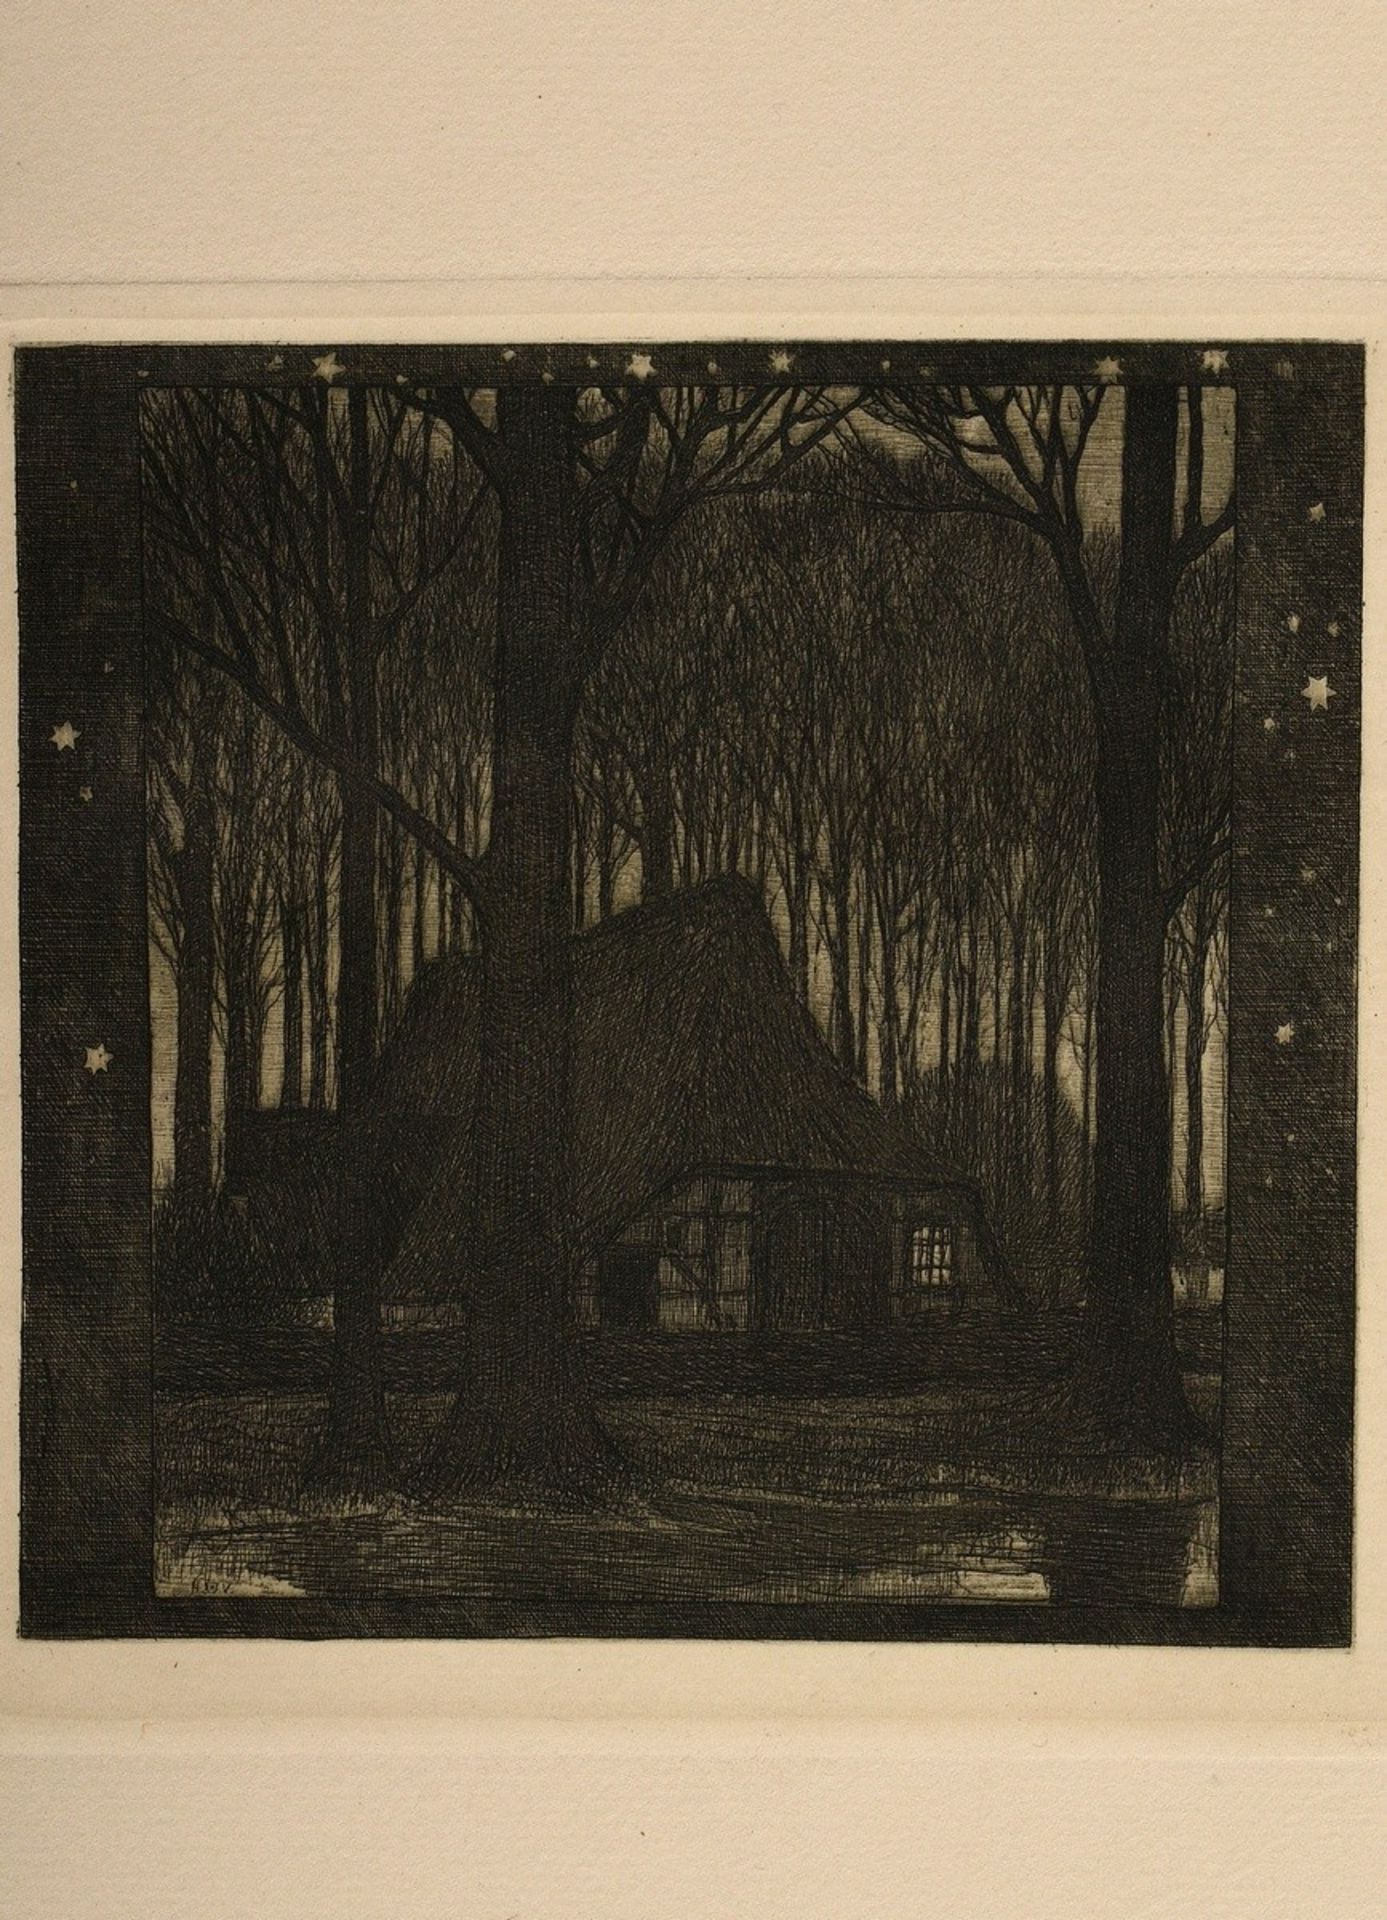 Vogeler, Heinrich (1872-1942) "An den Frühling" 1899/1901, portfolio with 10 etchings and prelimina - Image 9 of 25